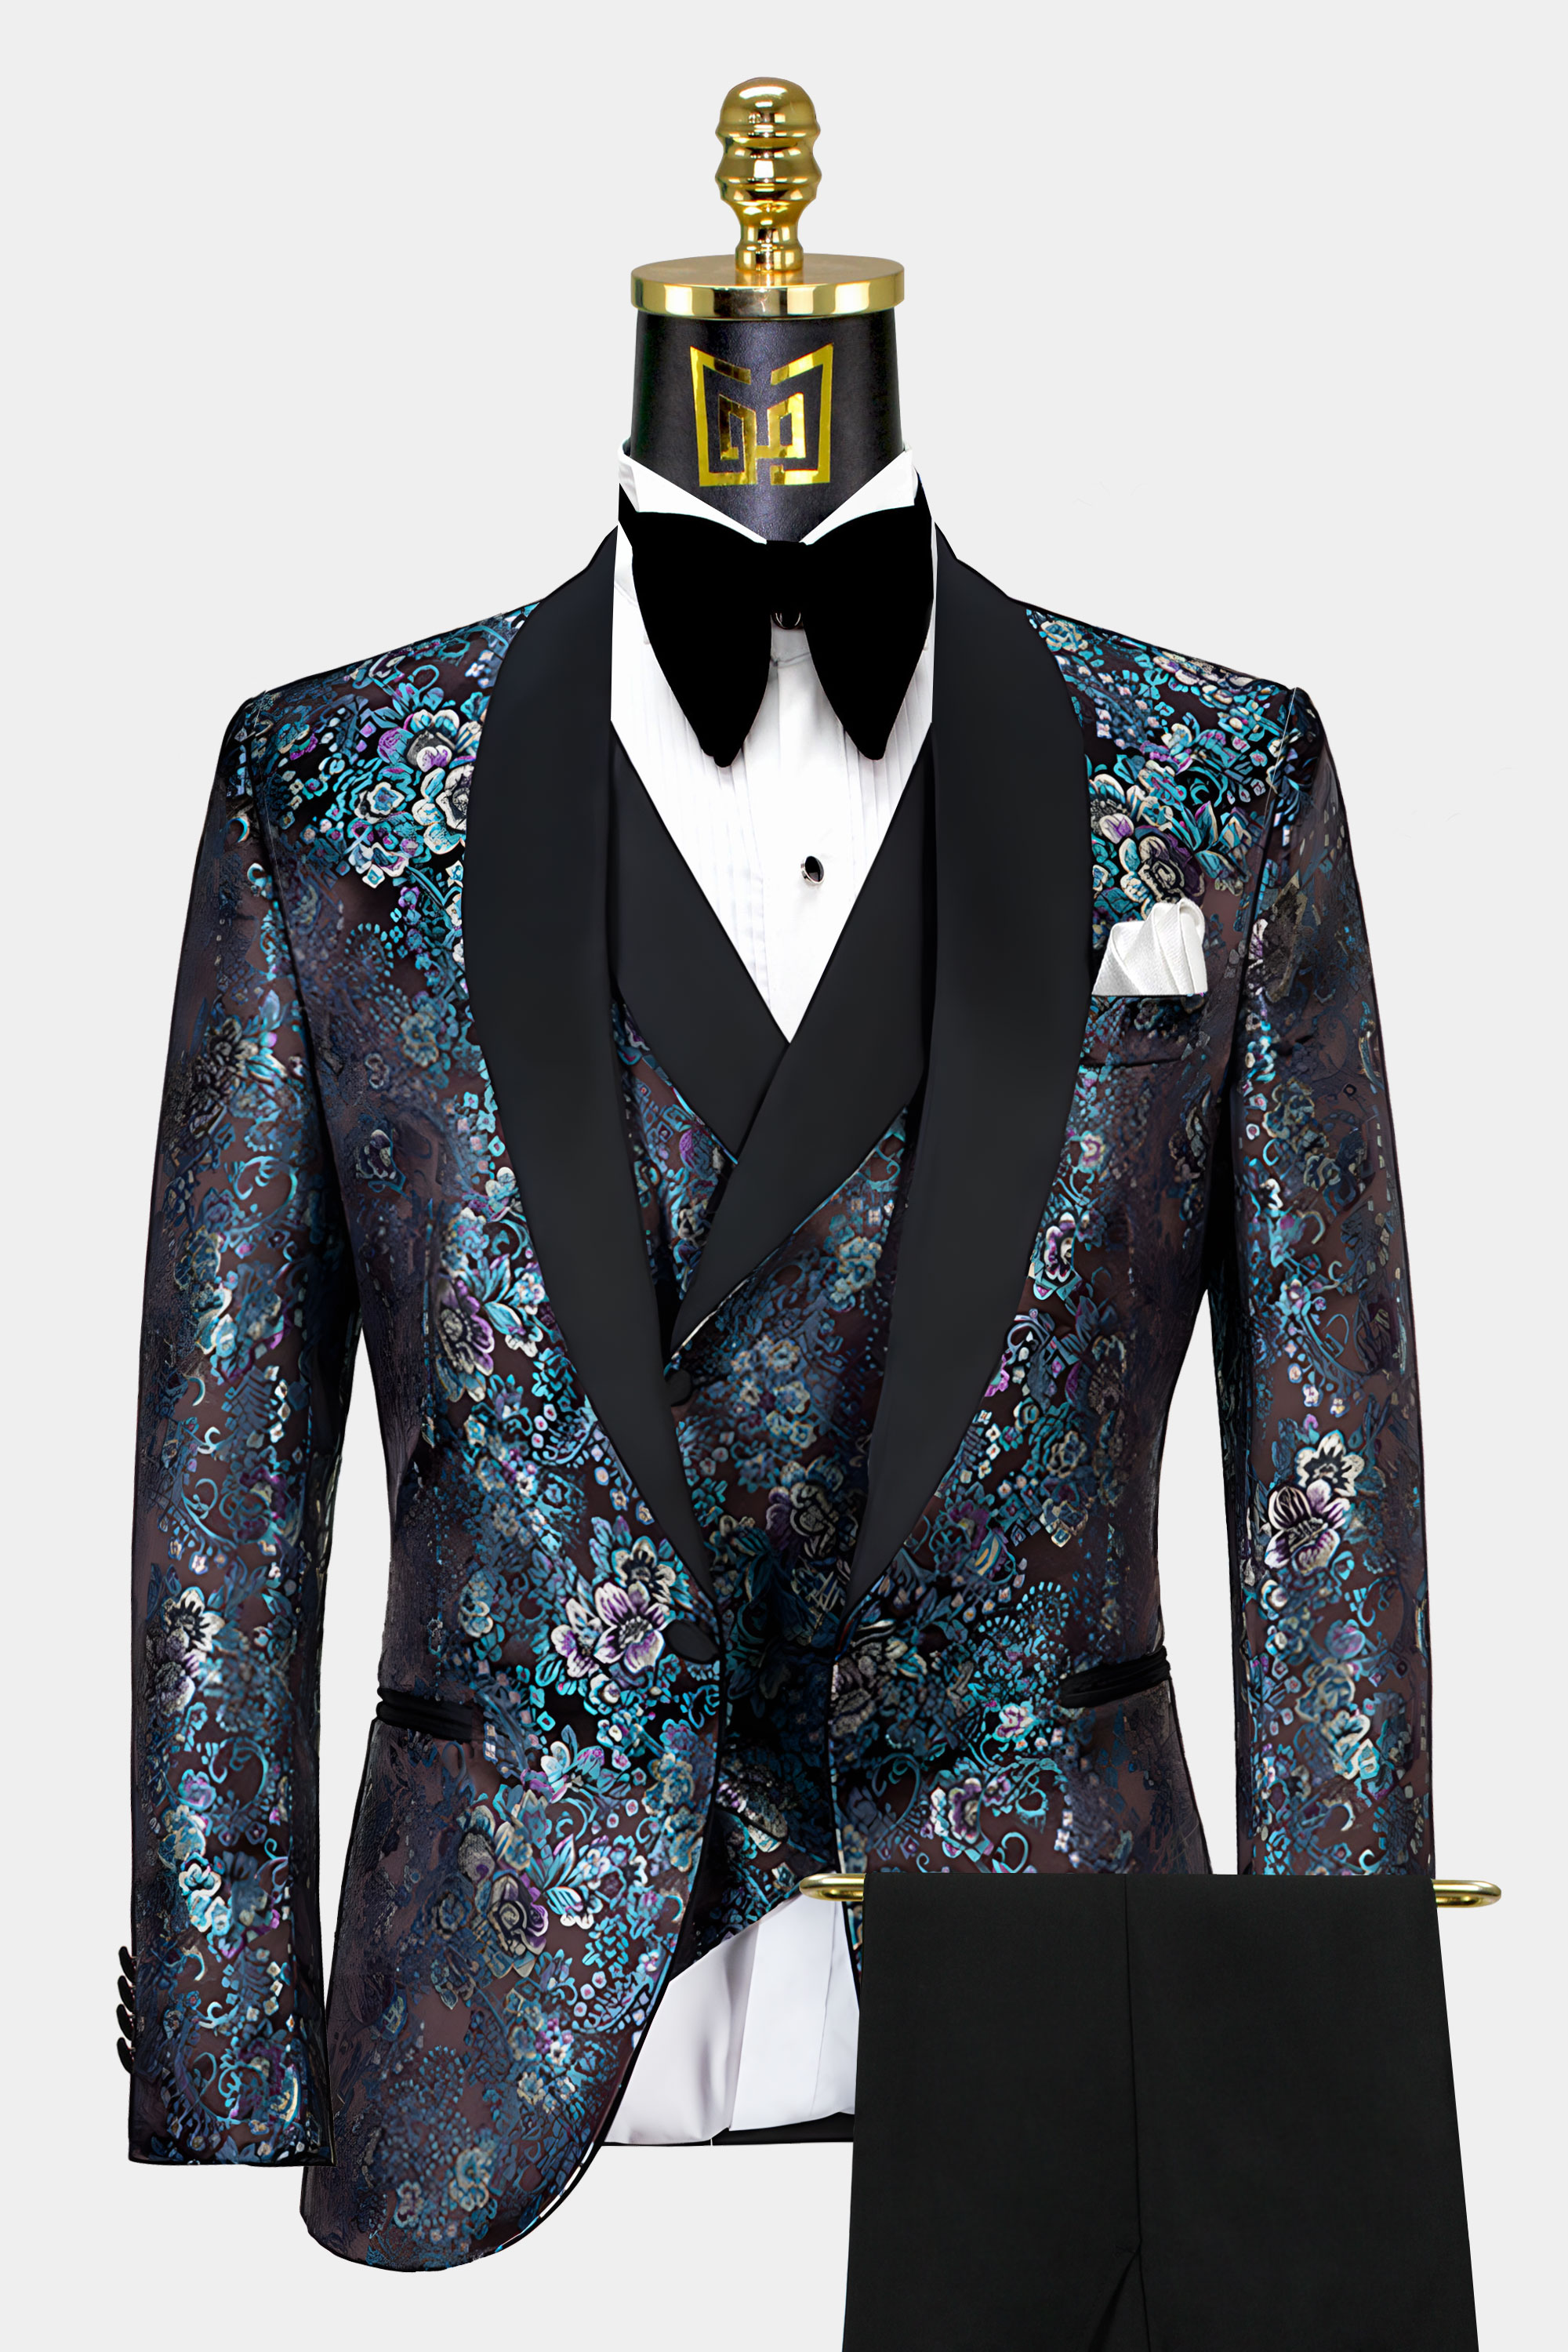 Mint-Green-Tuxedo-Wedding-Groom-Prom-Suit-For-Men-from-Gentlemansguru.com